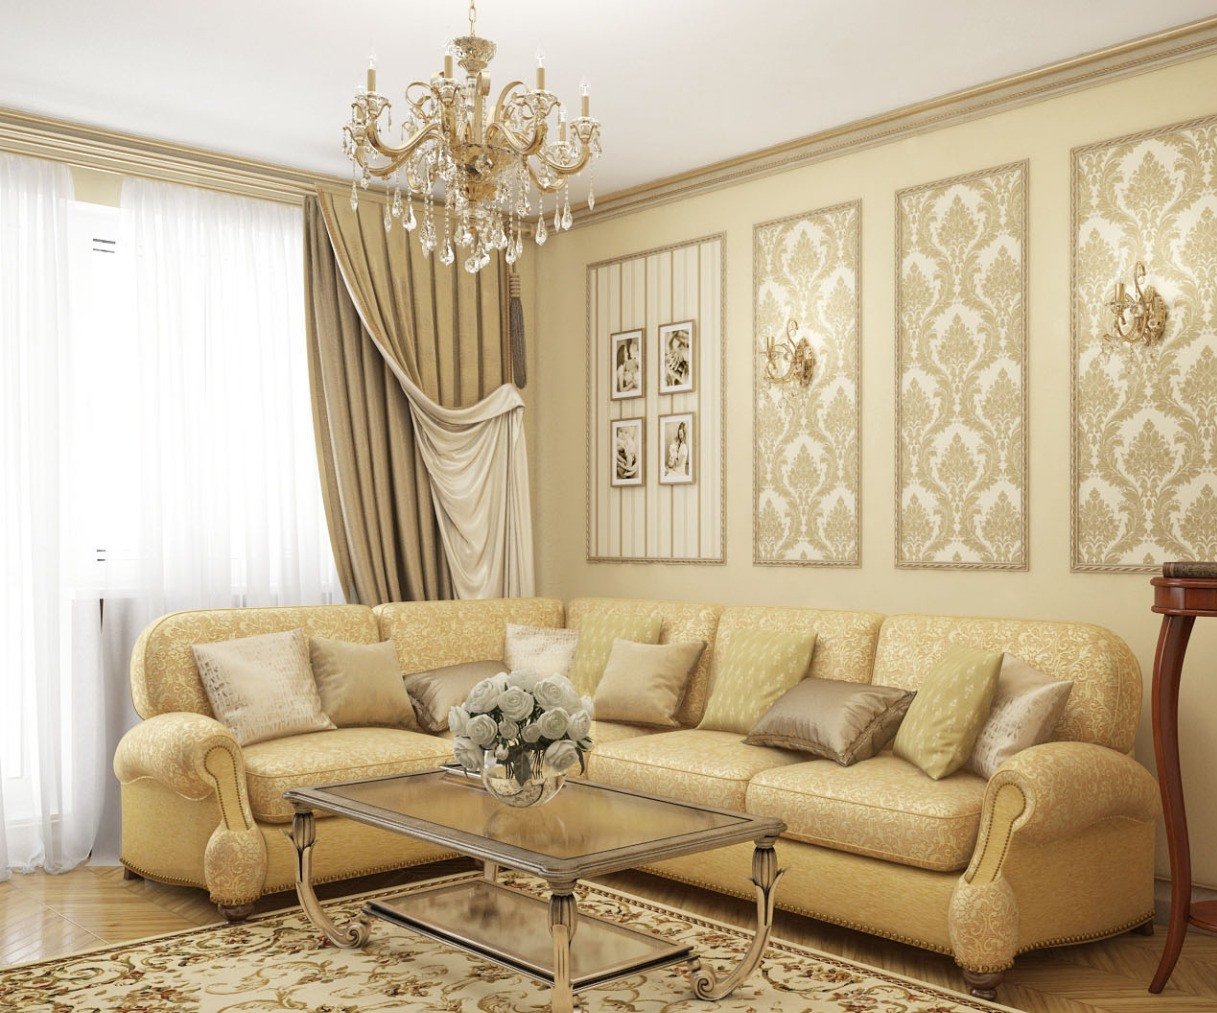 Taustakuva olohuoneessa: parhaat väri- ja tyyliyhdistelmät huoneen sisätiloissa, valokuvaesimerkkejä